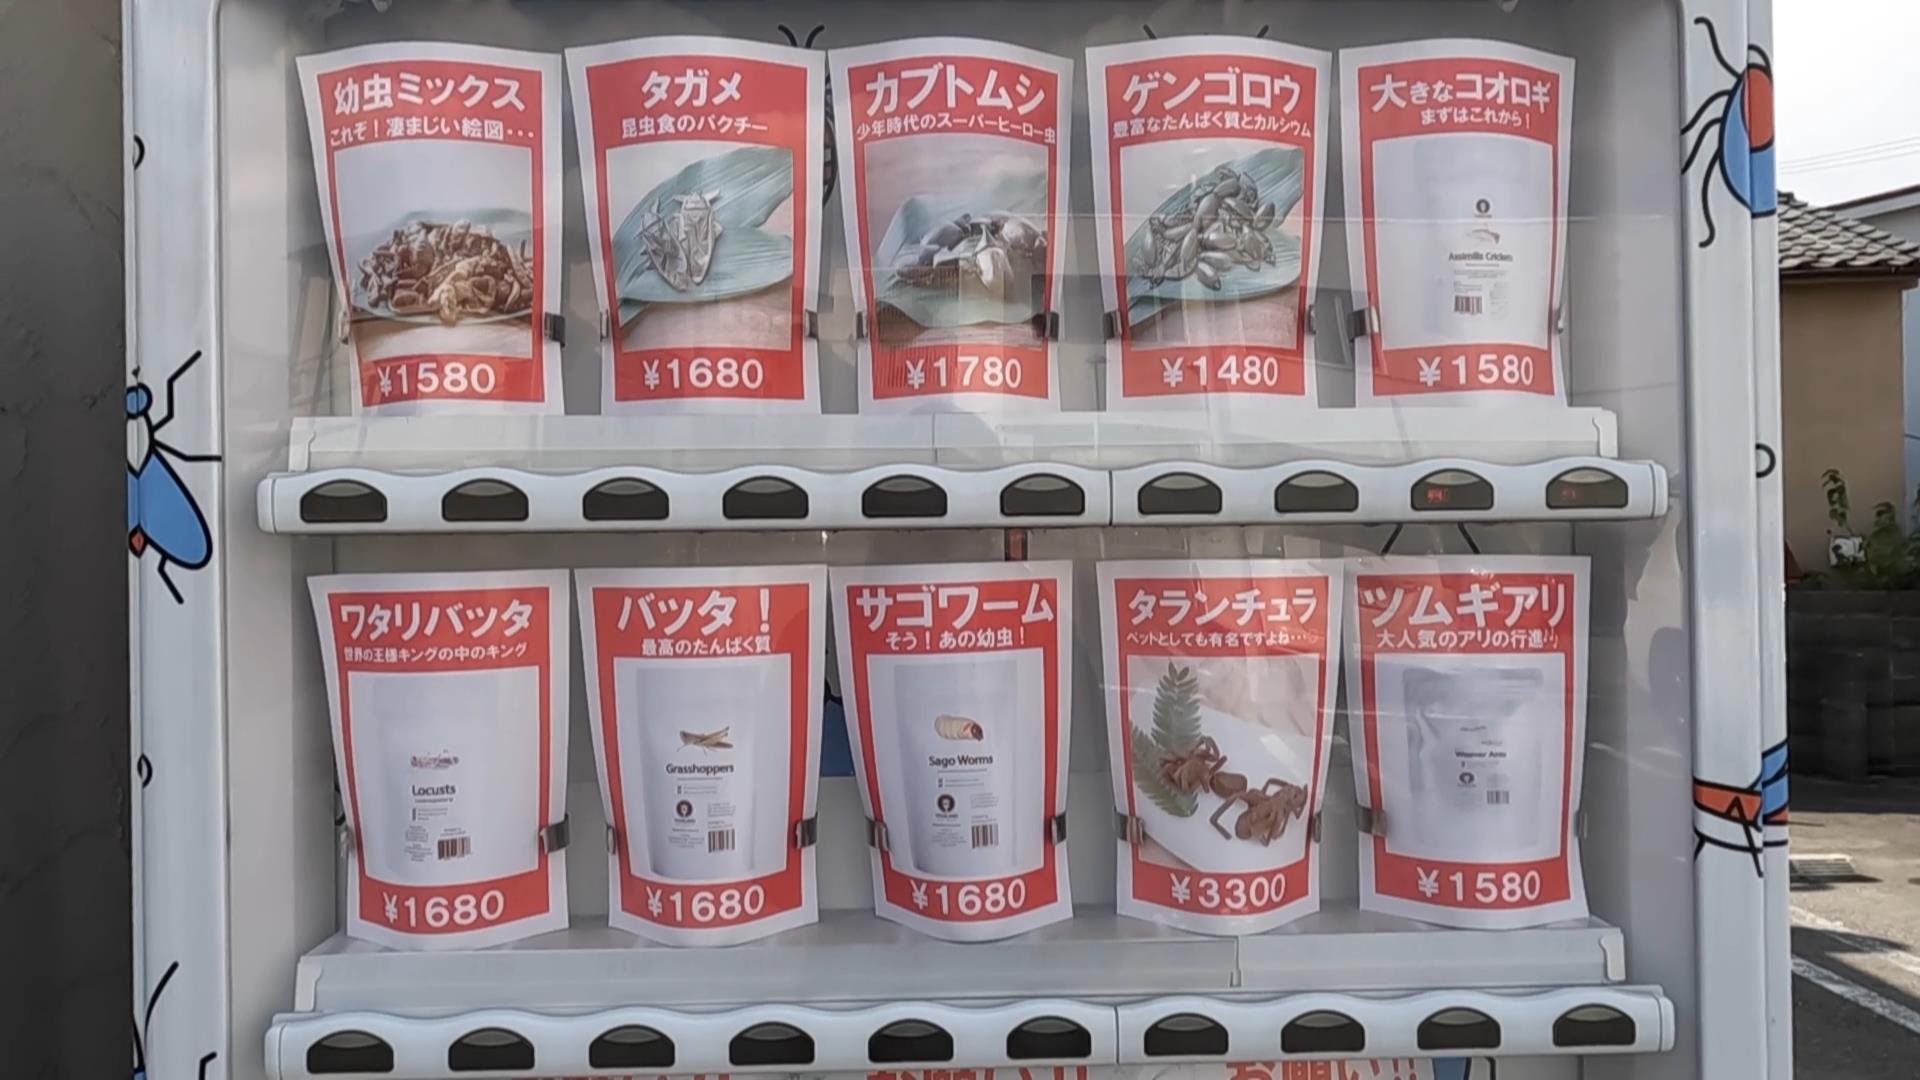 昆虫食自販機の商品ラインナップ